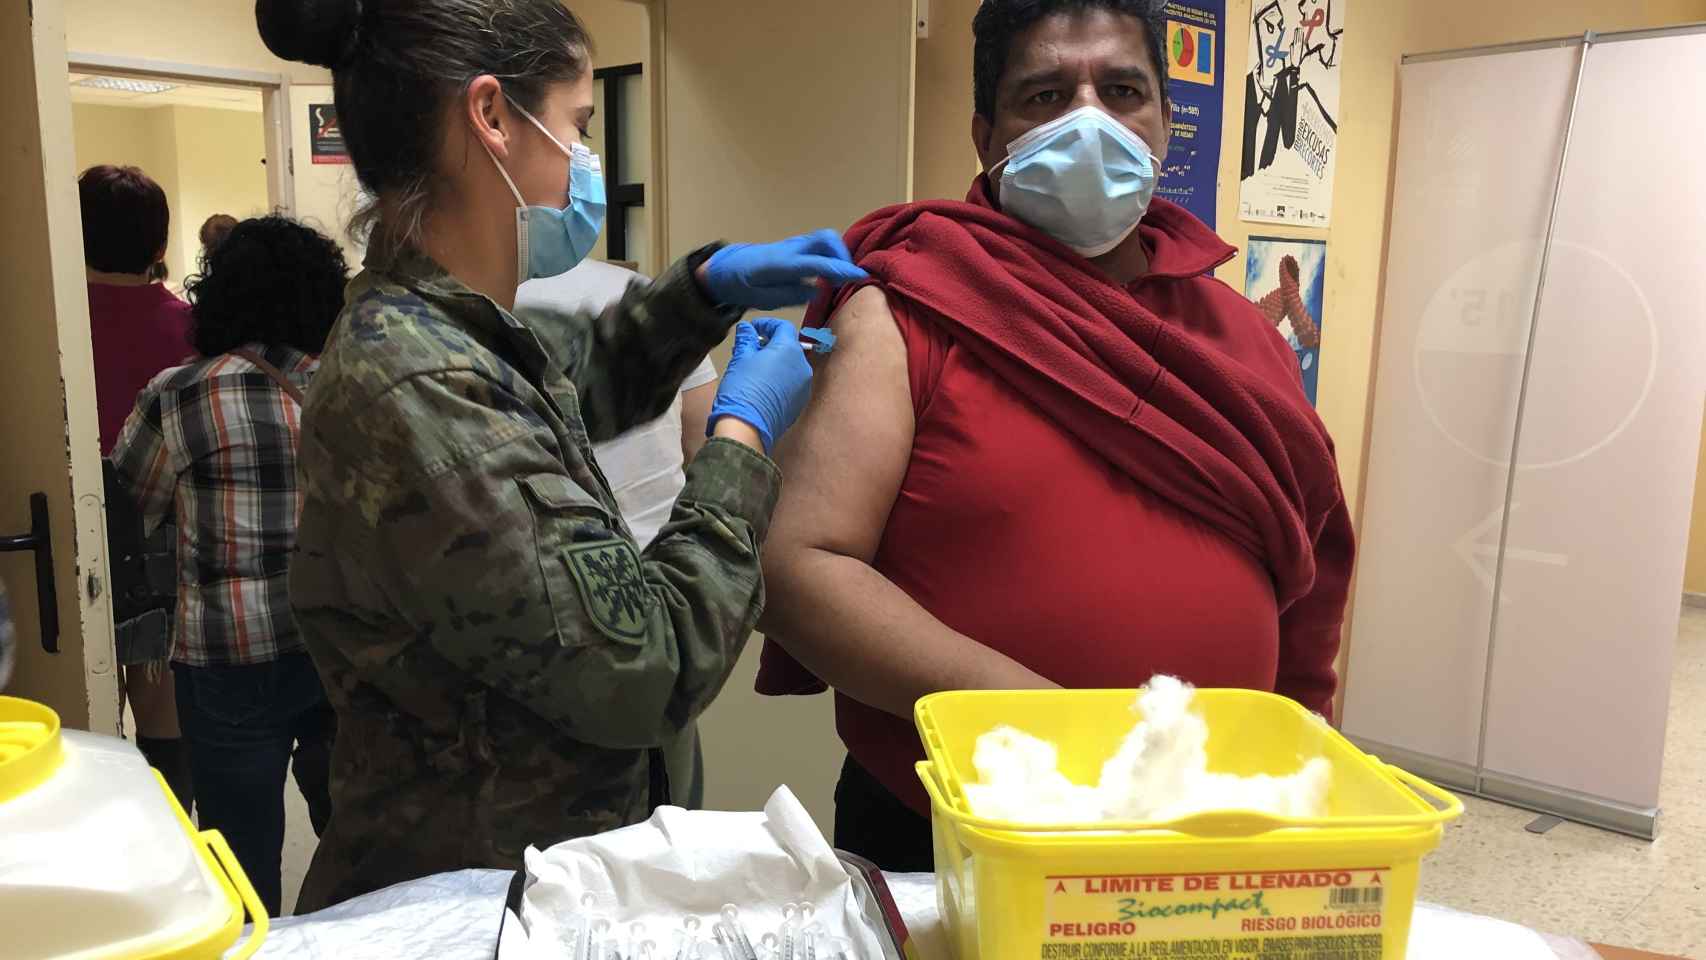 La rapidez de contagios ha hecho necesaria la intervención del ejército para acelerar las vacunas.